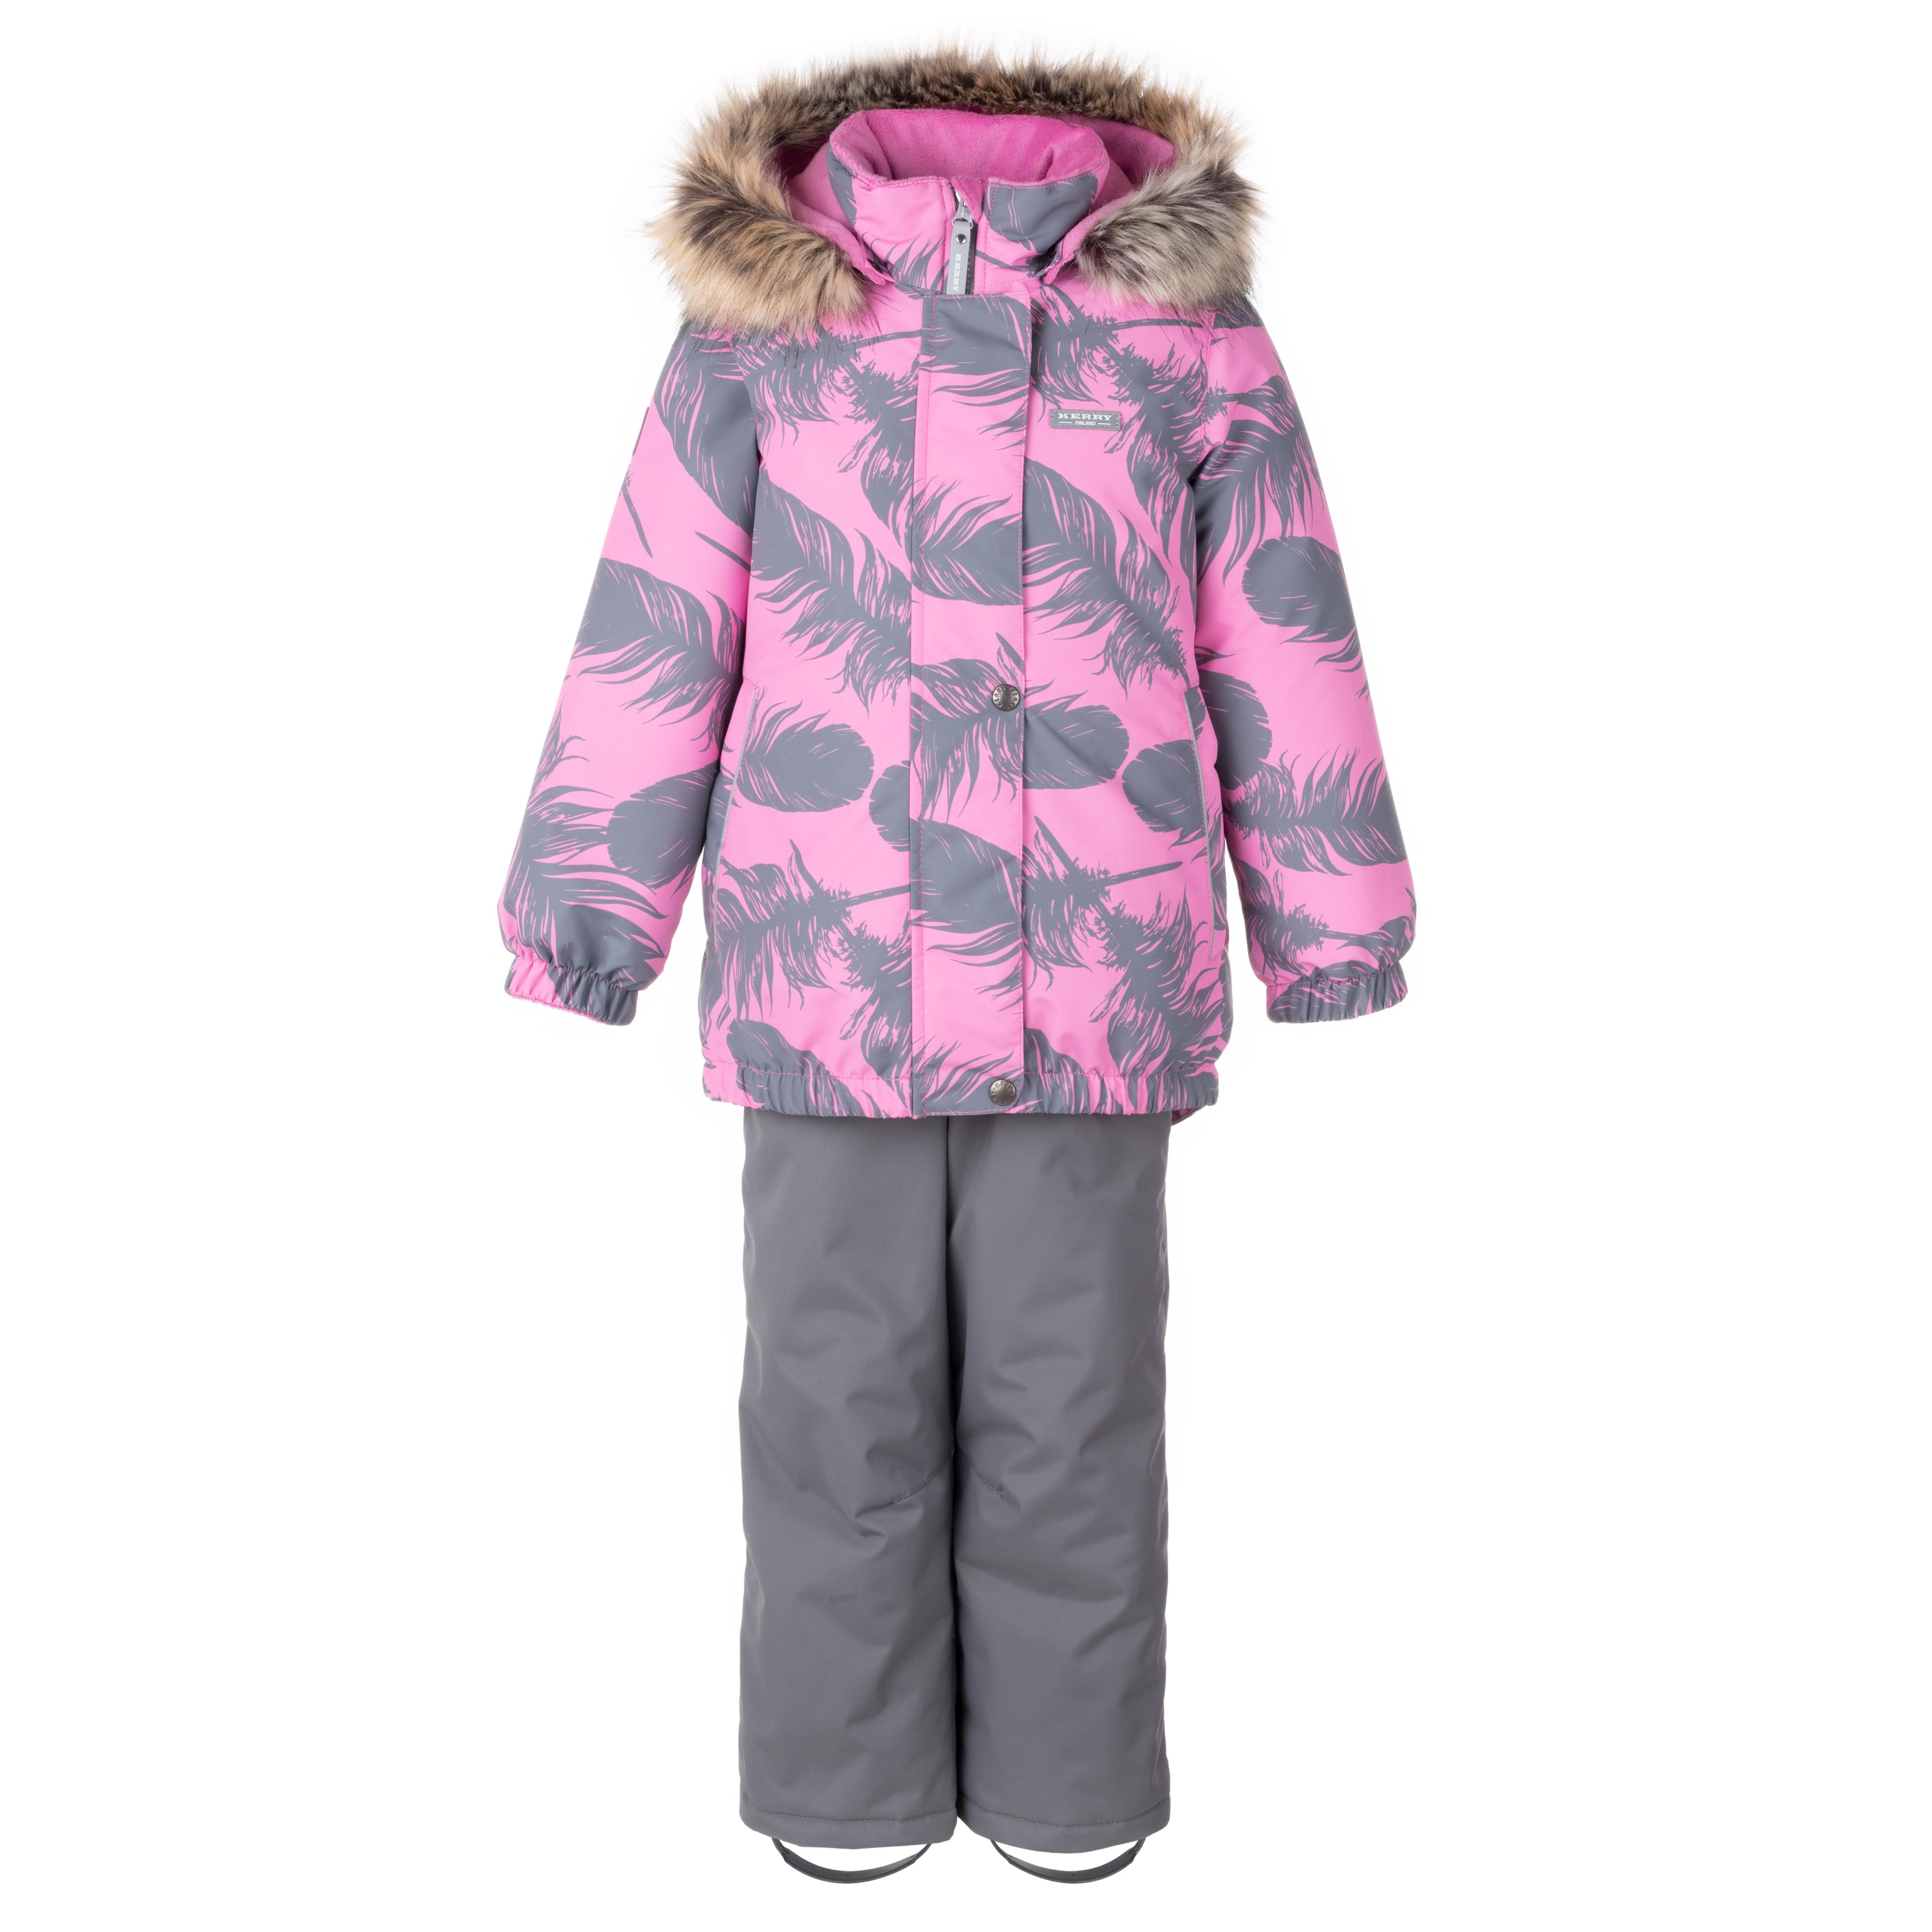 Комплект верхней одежды KERRY K23420 A, серый, розовый, 116